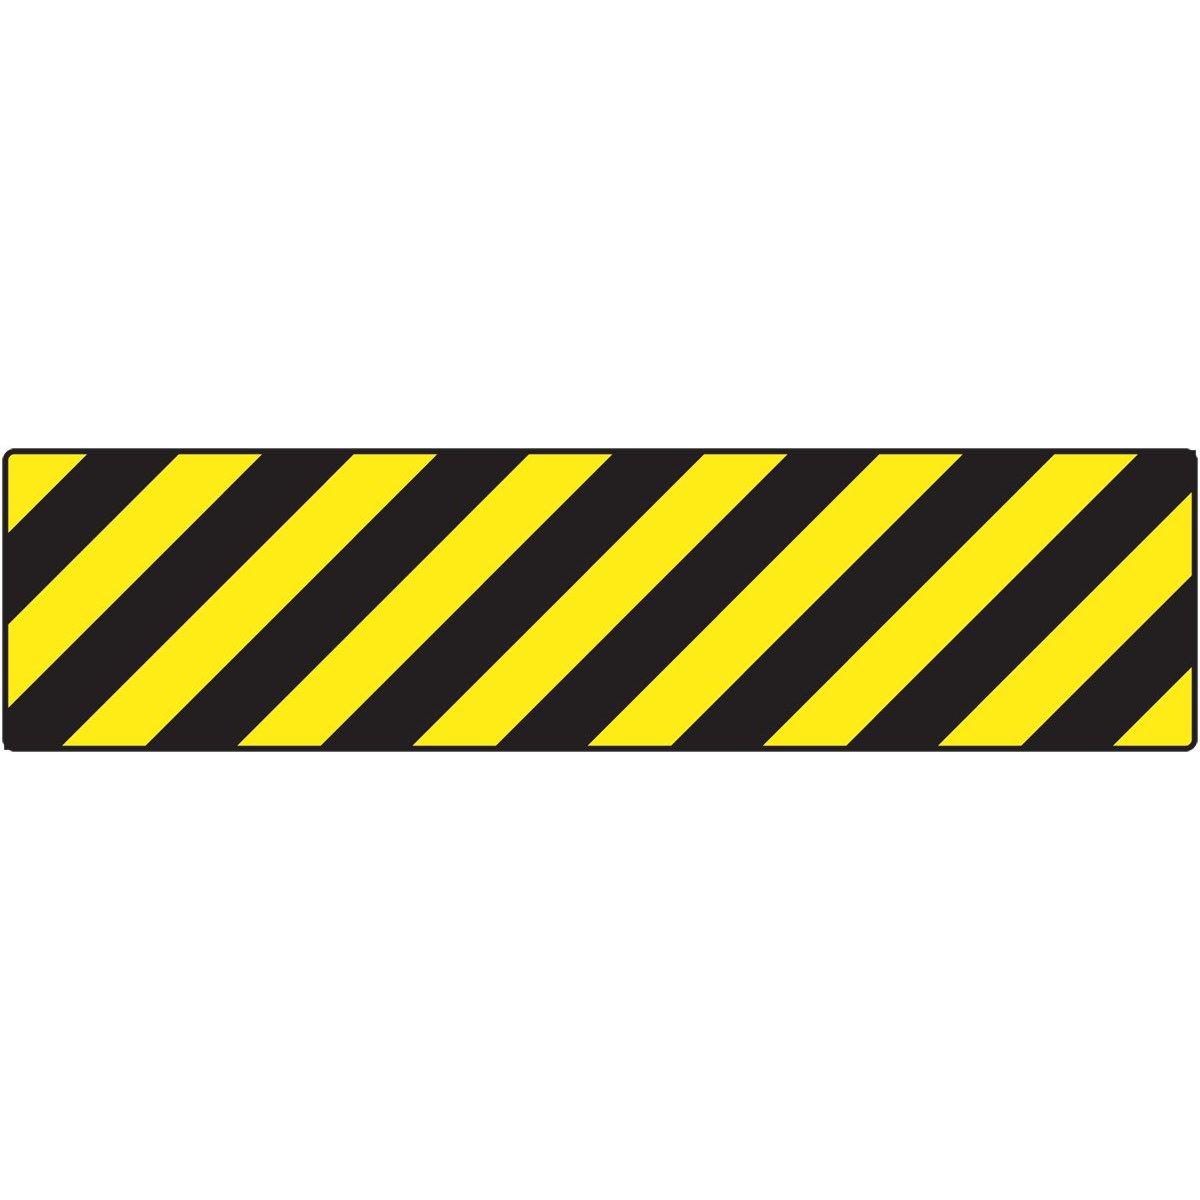 Caution Tape Border - ClipArt Best